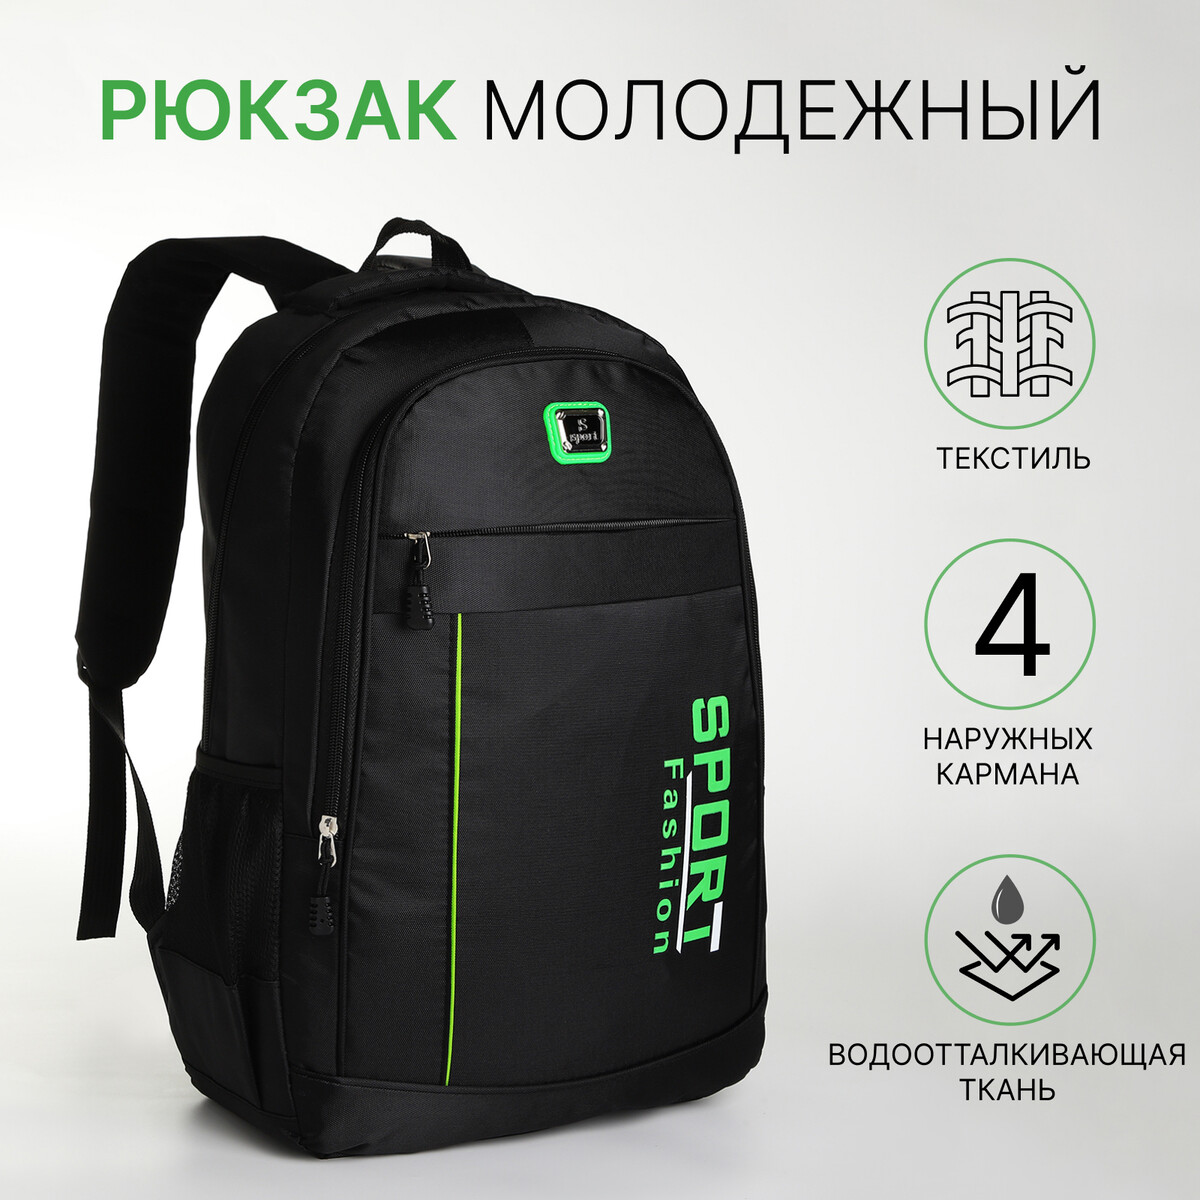 Рюкзак молодежный на молнии, 4 кармана, цвет черный/зеленый рюкзак школьный из текстиля на молнии 3 кармана пенал зеленый